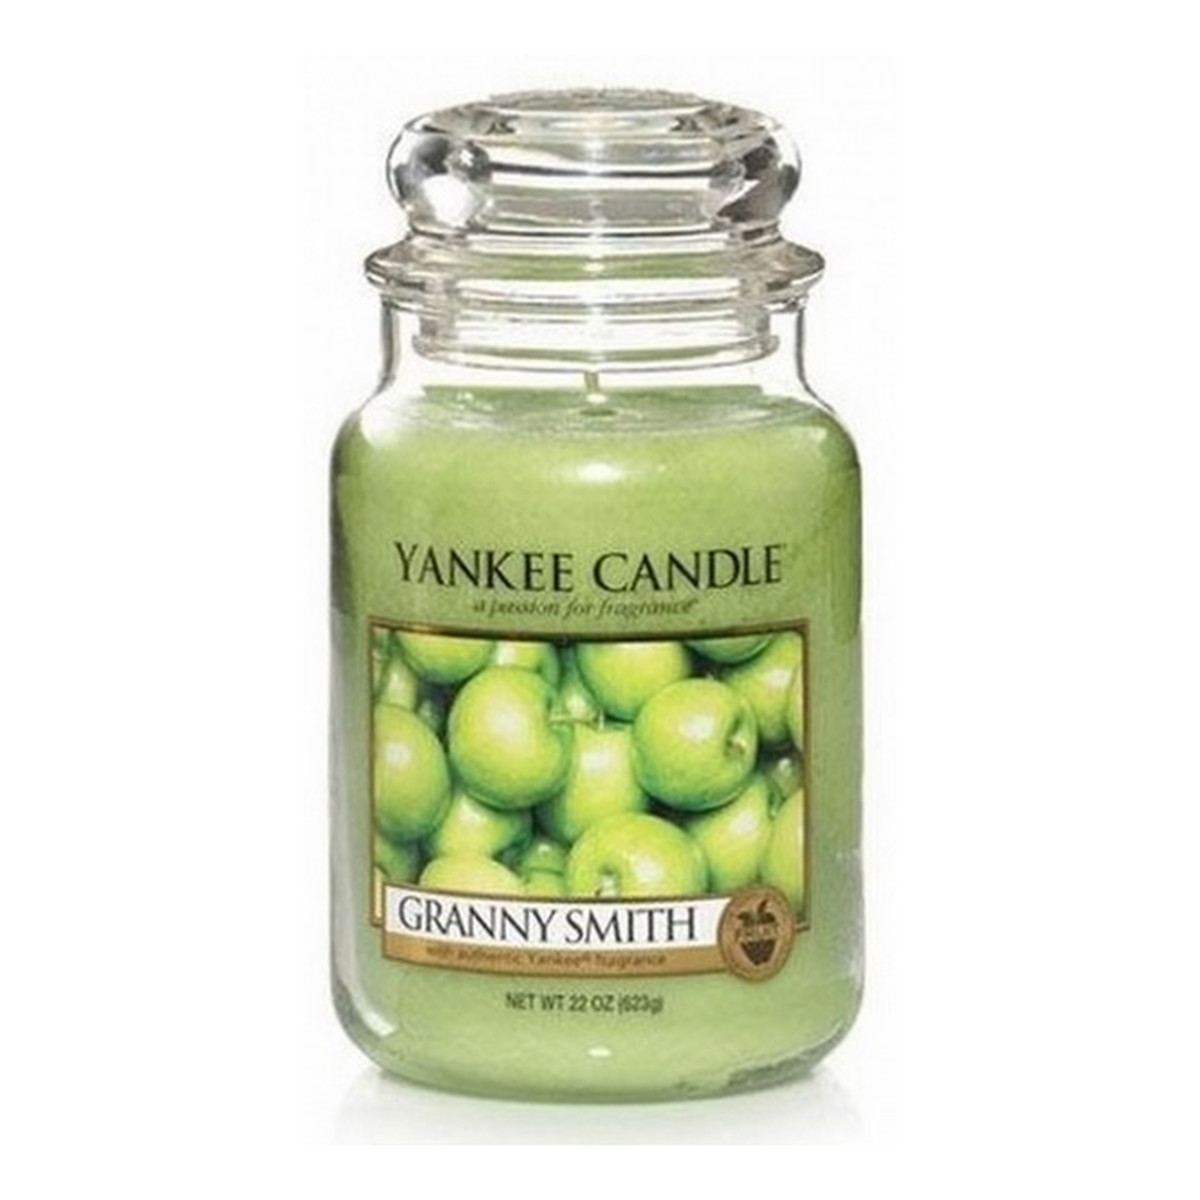 Yankee Candle Large Jar duża świeczka zapachowa Granny Smith 623g